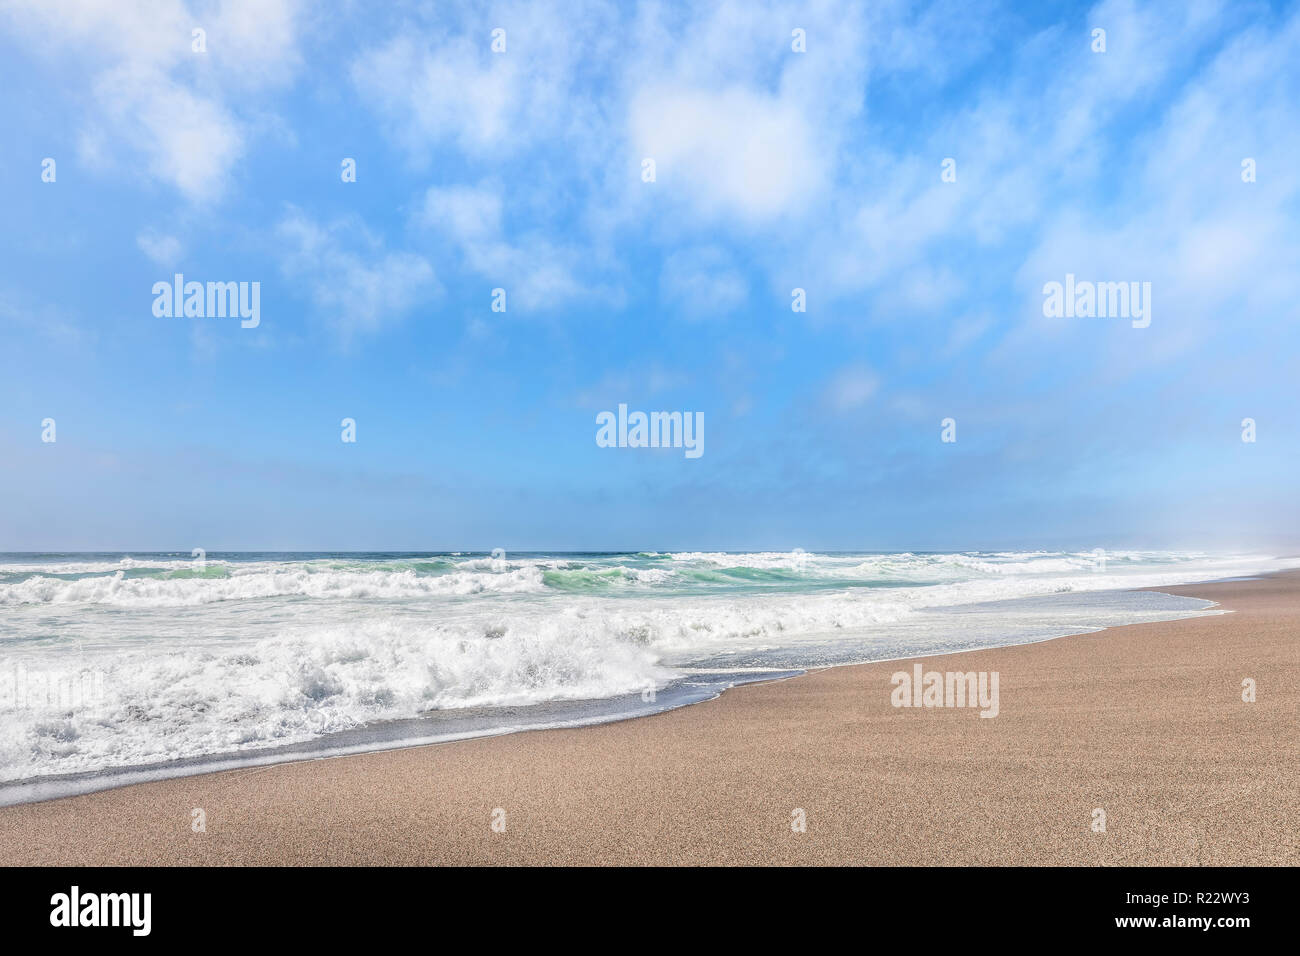 Suaves olas que rompen en una playa de arena, bajo un nublado cielo de verano azul a lo largo de California's Point Reyes National Seashore. Foto de stock